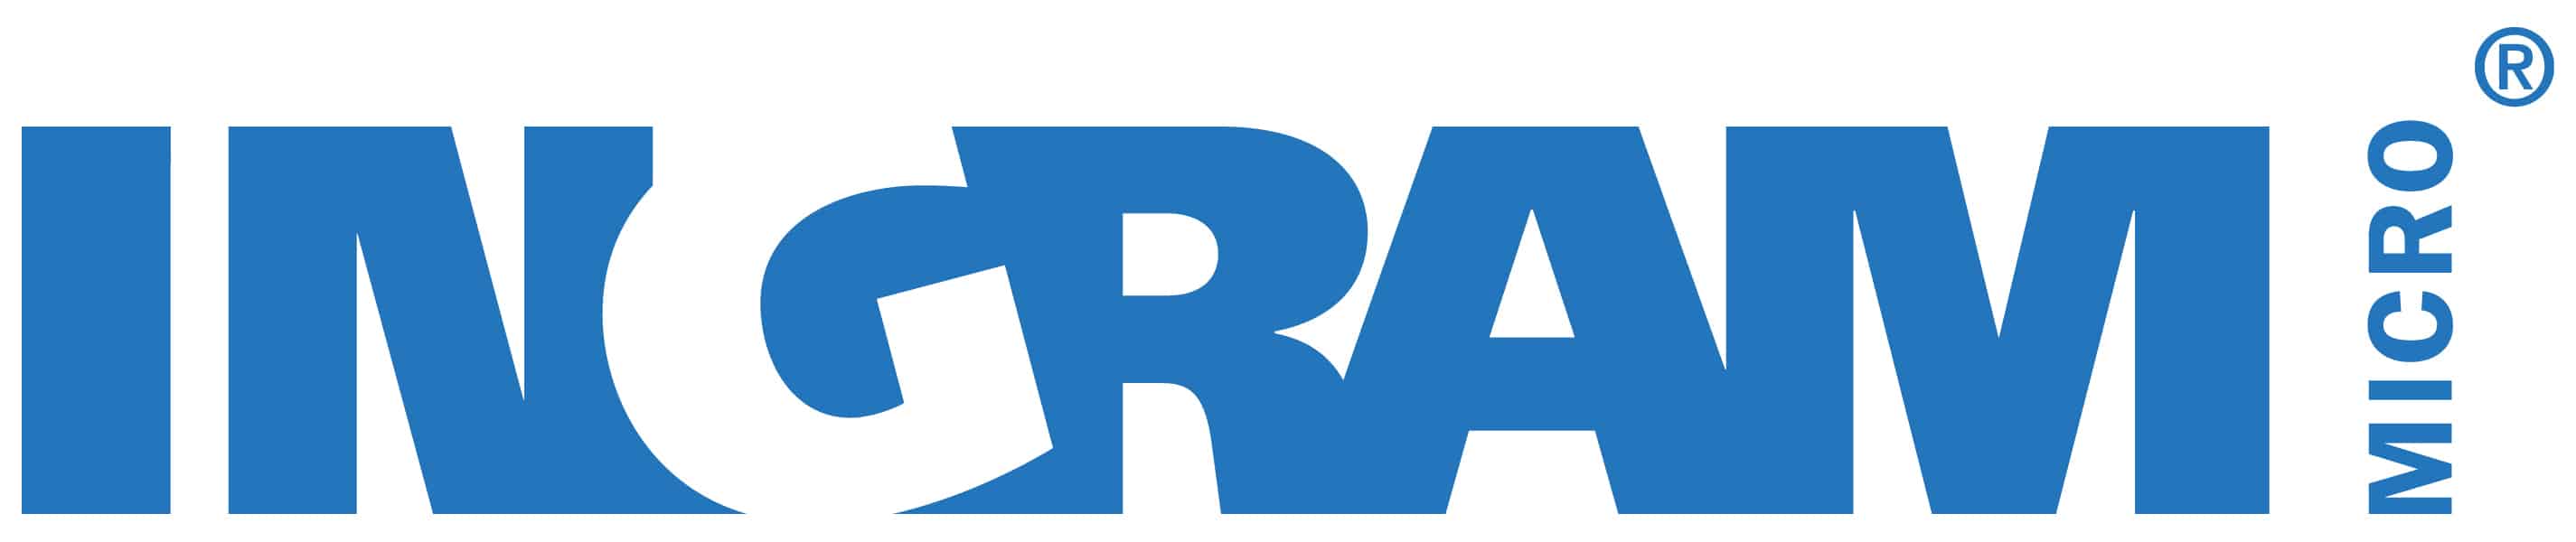 Jabra One Authorized Partner Logo